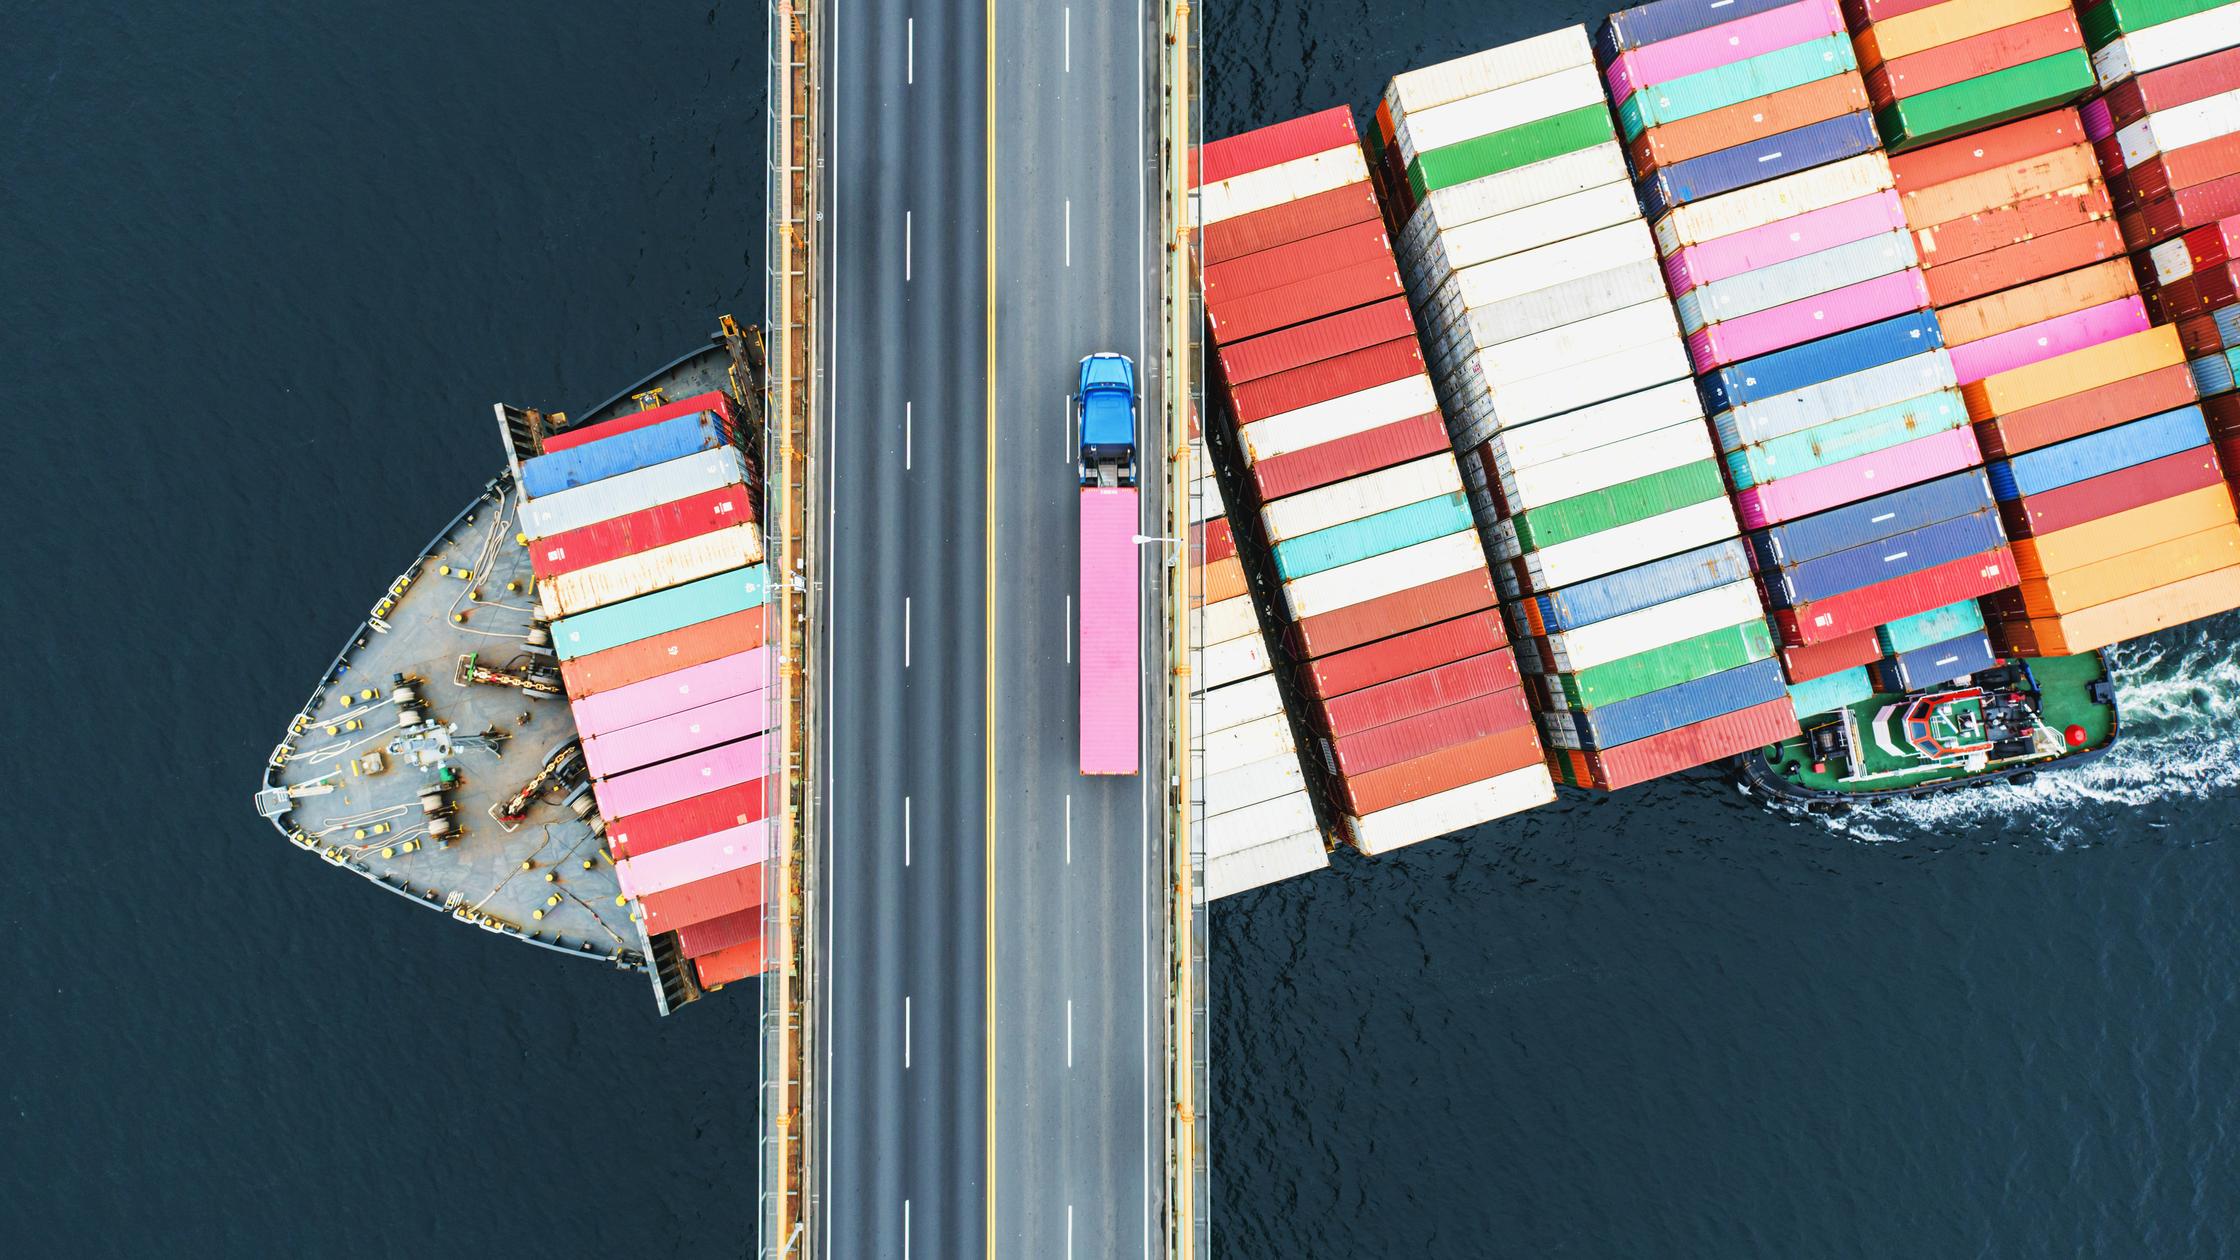 Supply chain : cargo ships